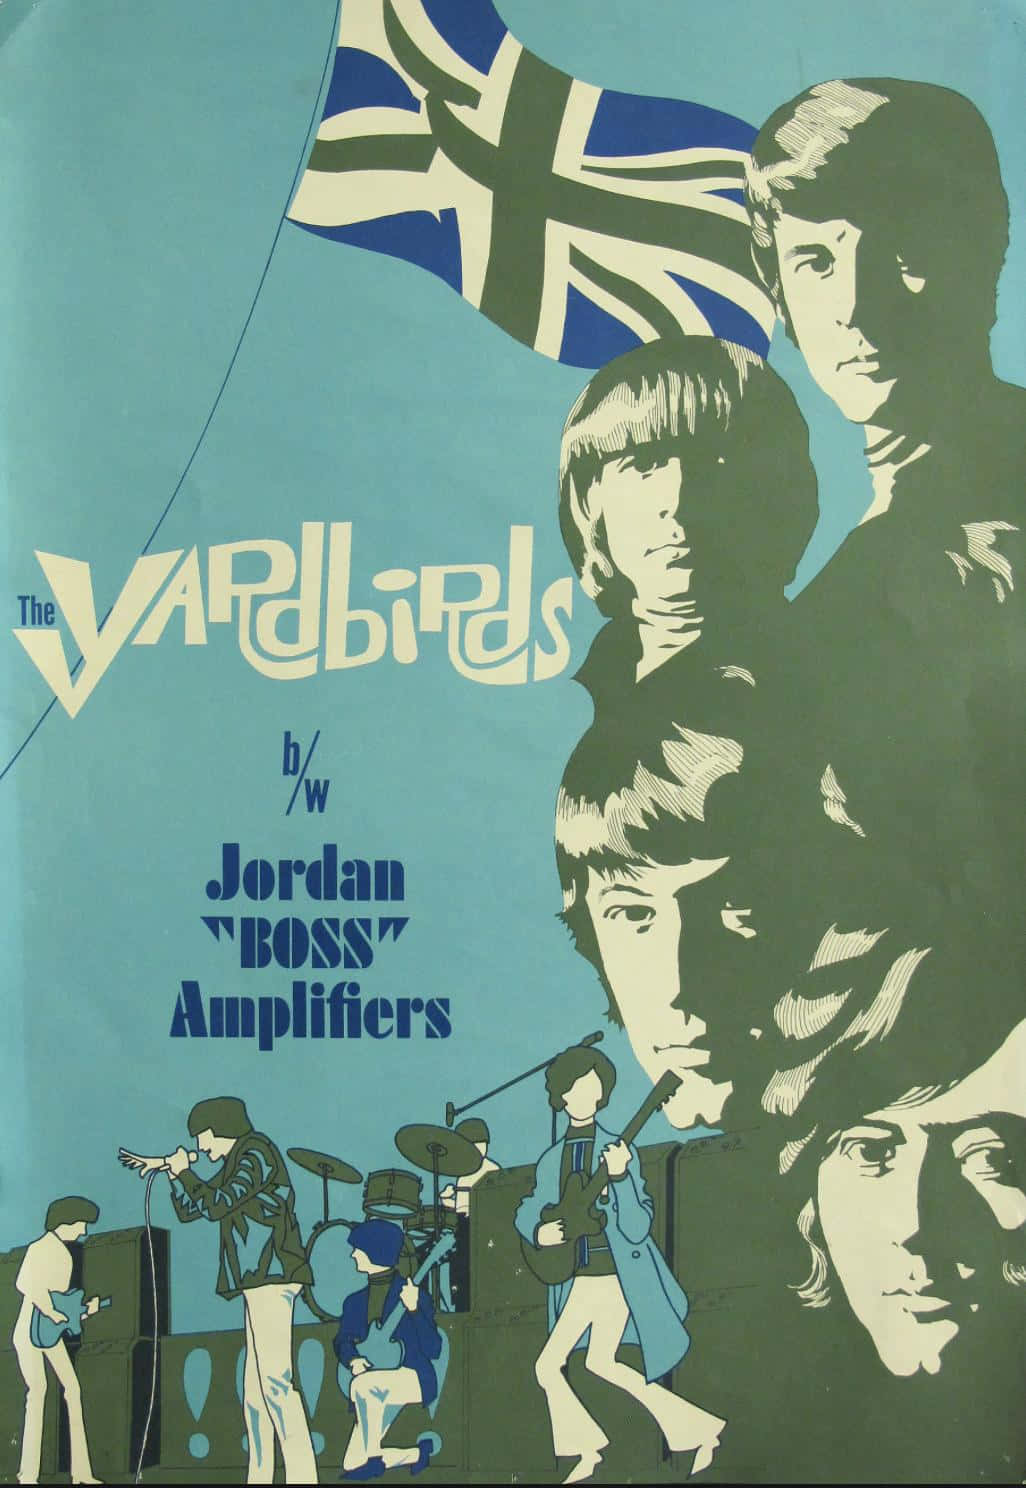 Opôster Dos Amplificadores Jordan Boss Do The Yardbirds. Papel de Parede